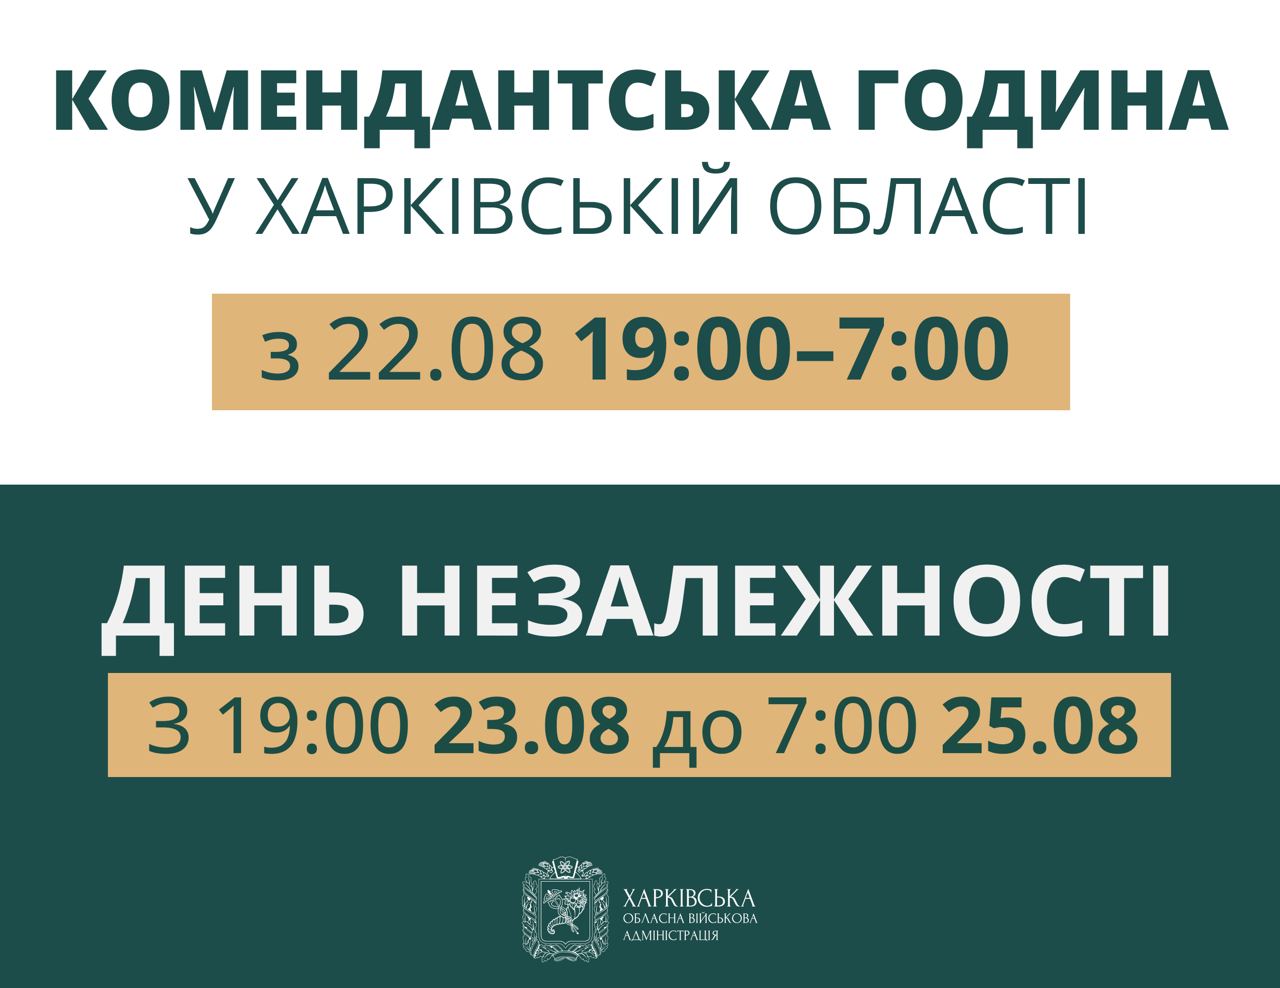 Комендантский час на Харьковщине будет начинаться с 19:00, а в связи с Днем Независимости продлится больше суток